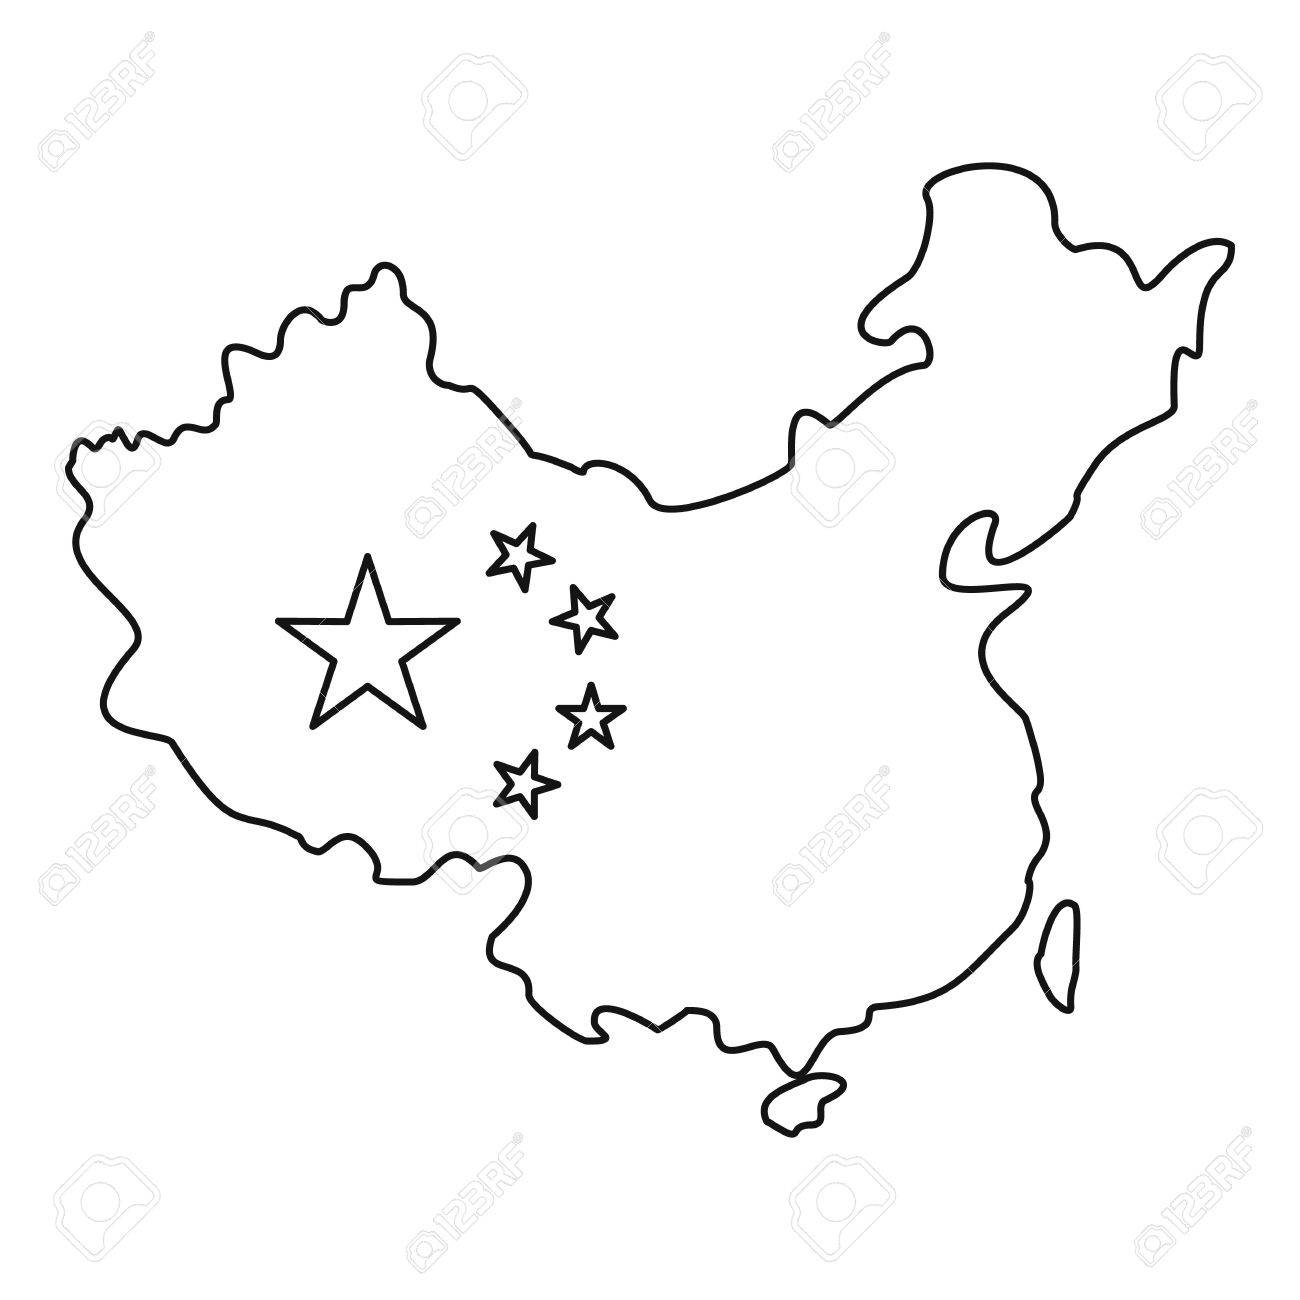 China clipart drawing. Flag at getdrawings com